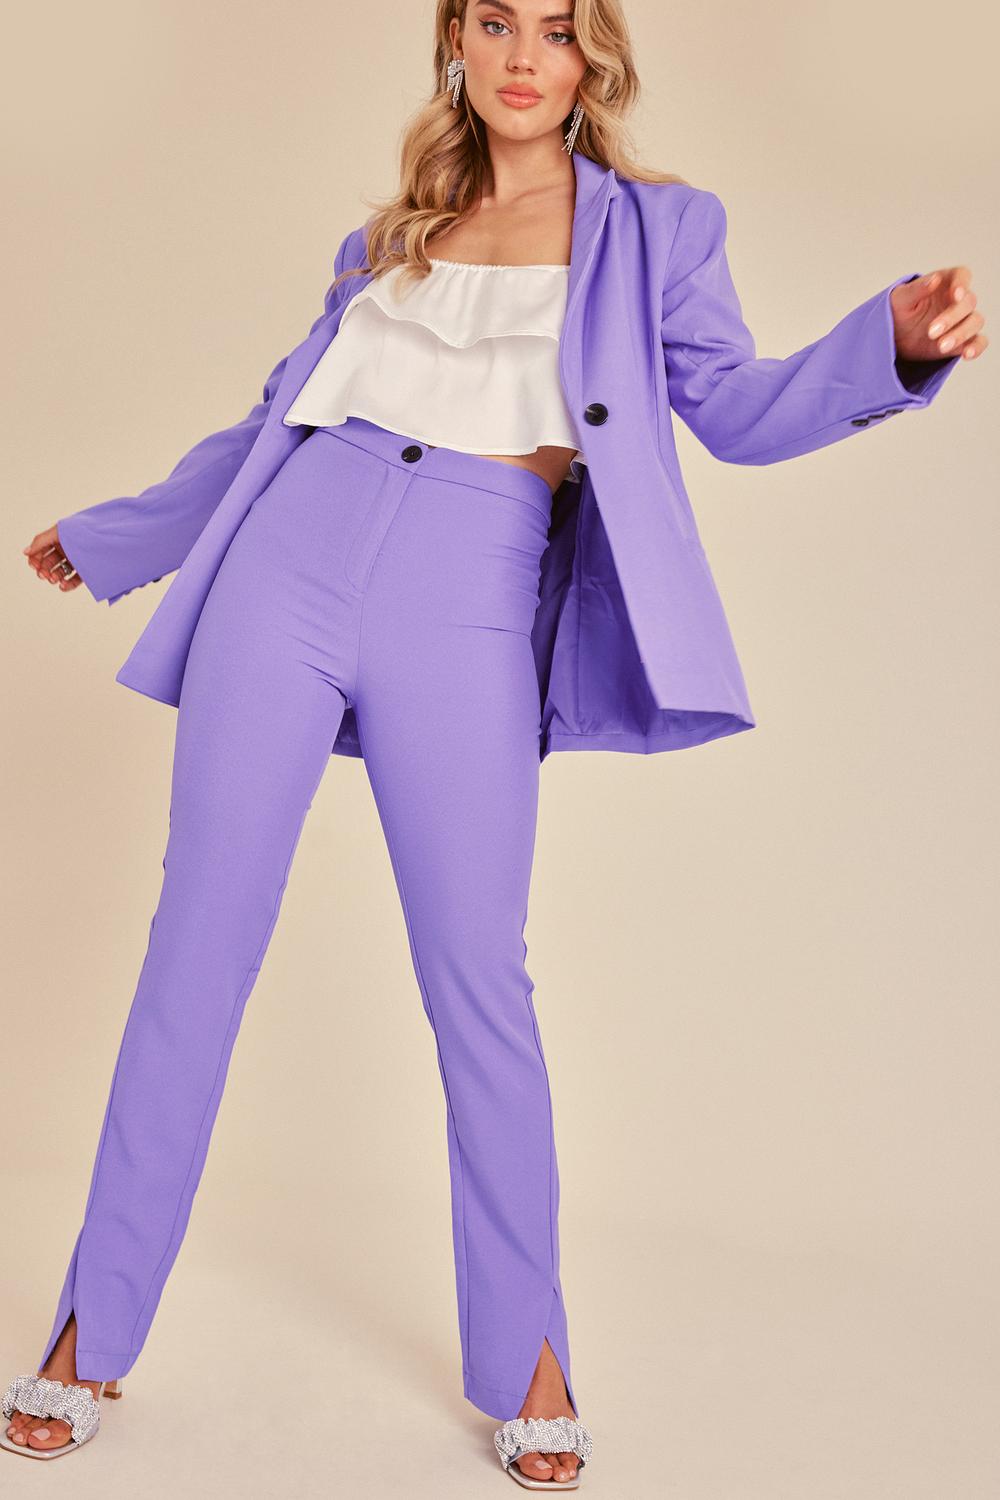 Purple trousers